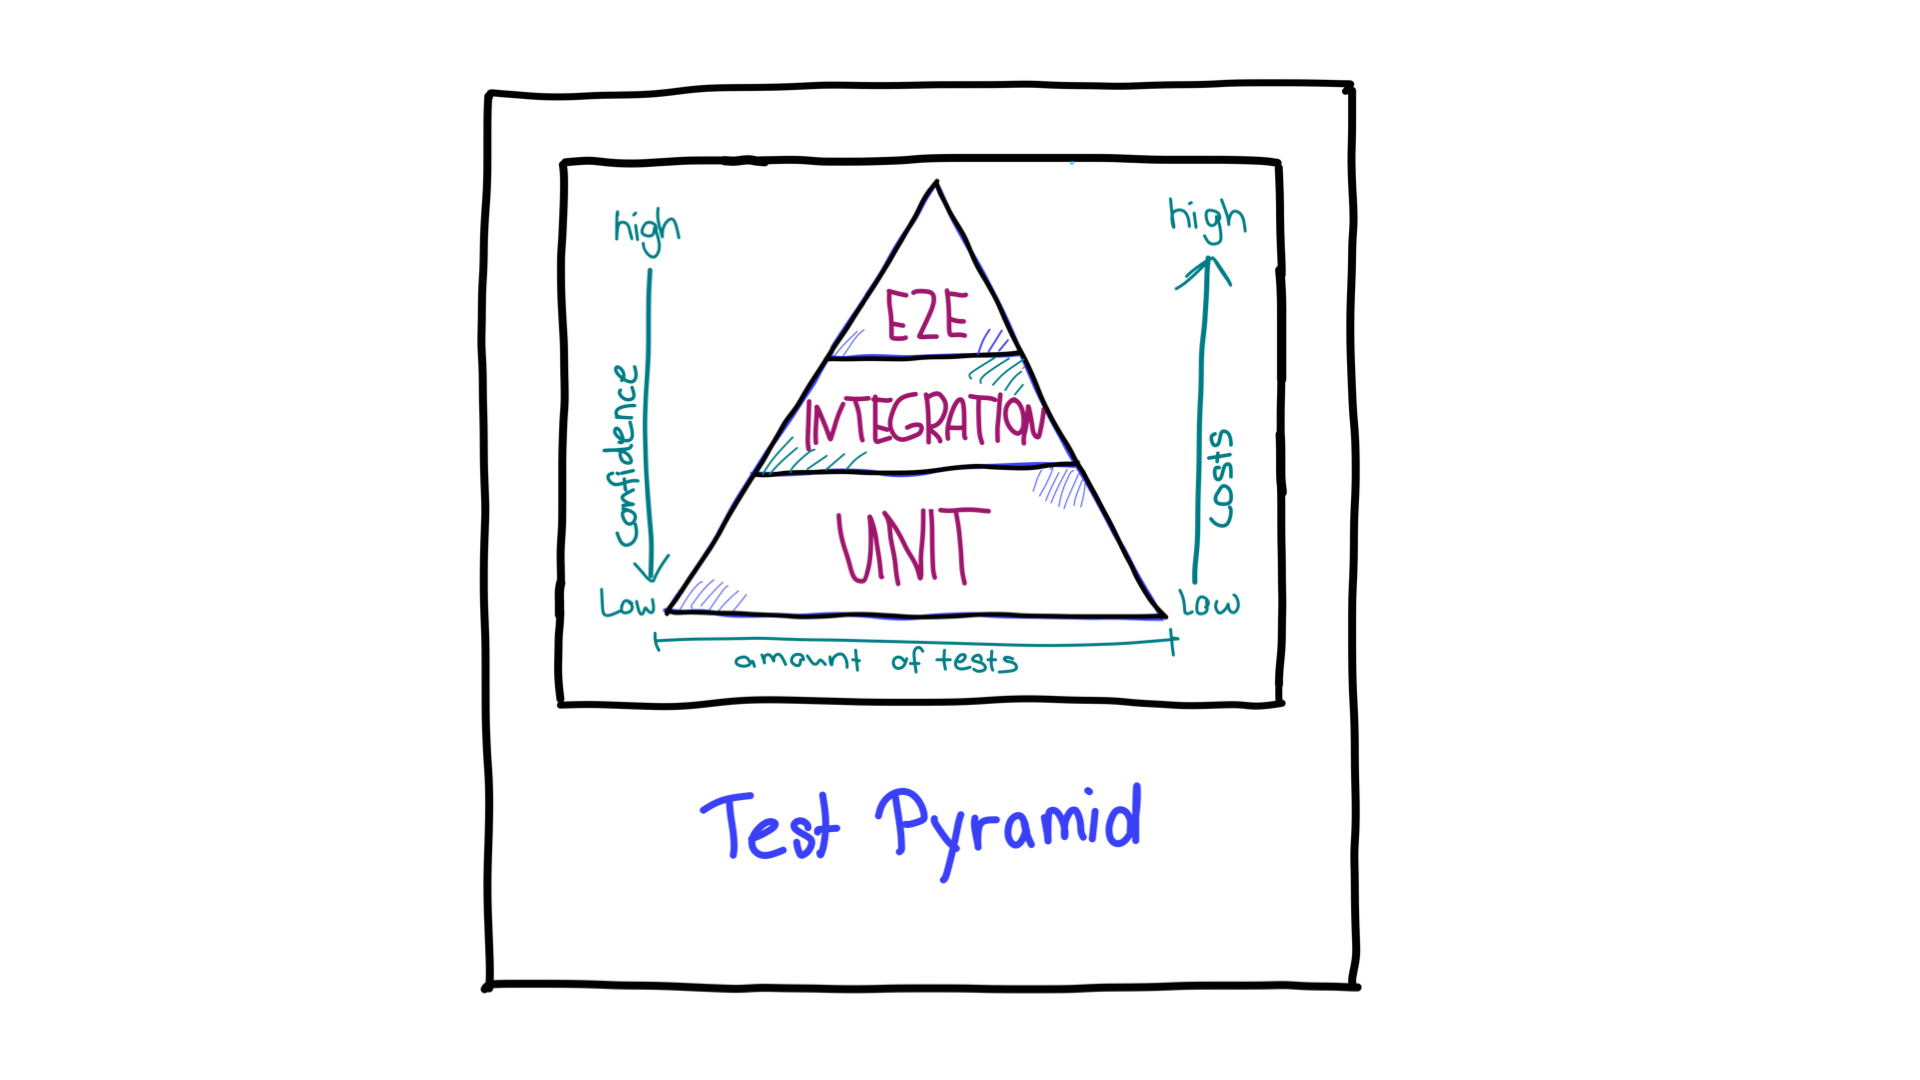 Pirámide de prueba con flechas que muestran la dirección de la confianza y los recursos necesarios para diferentes tipos de pruebas.